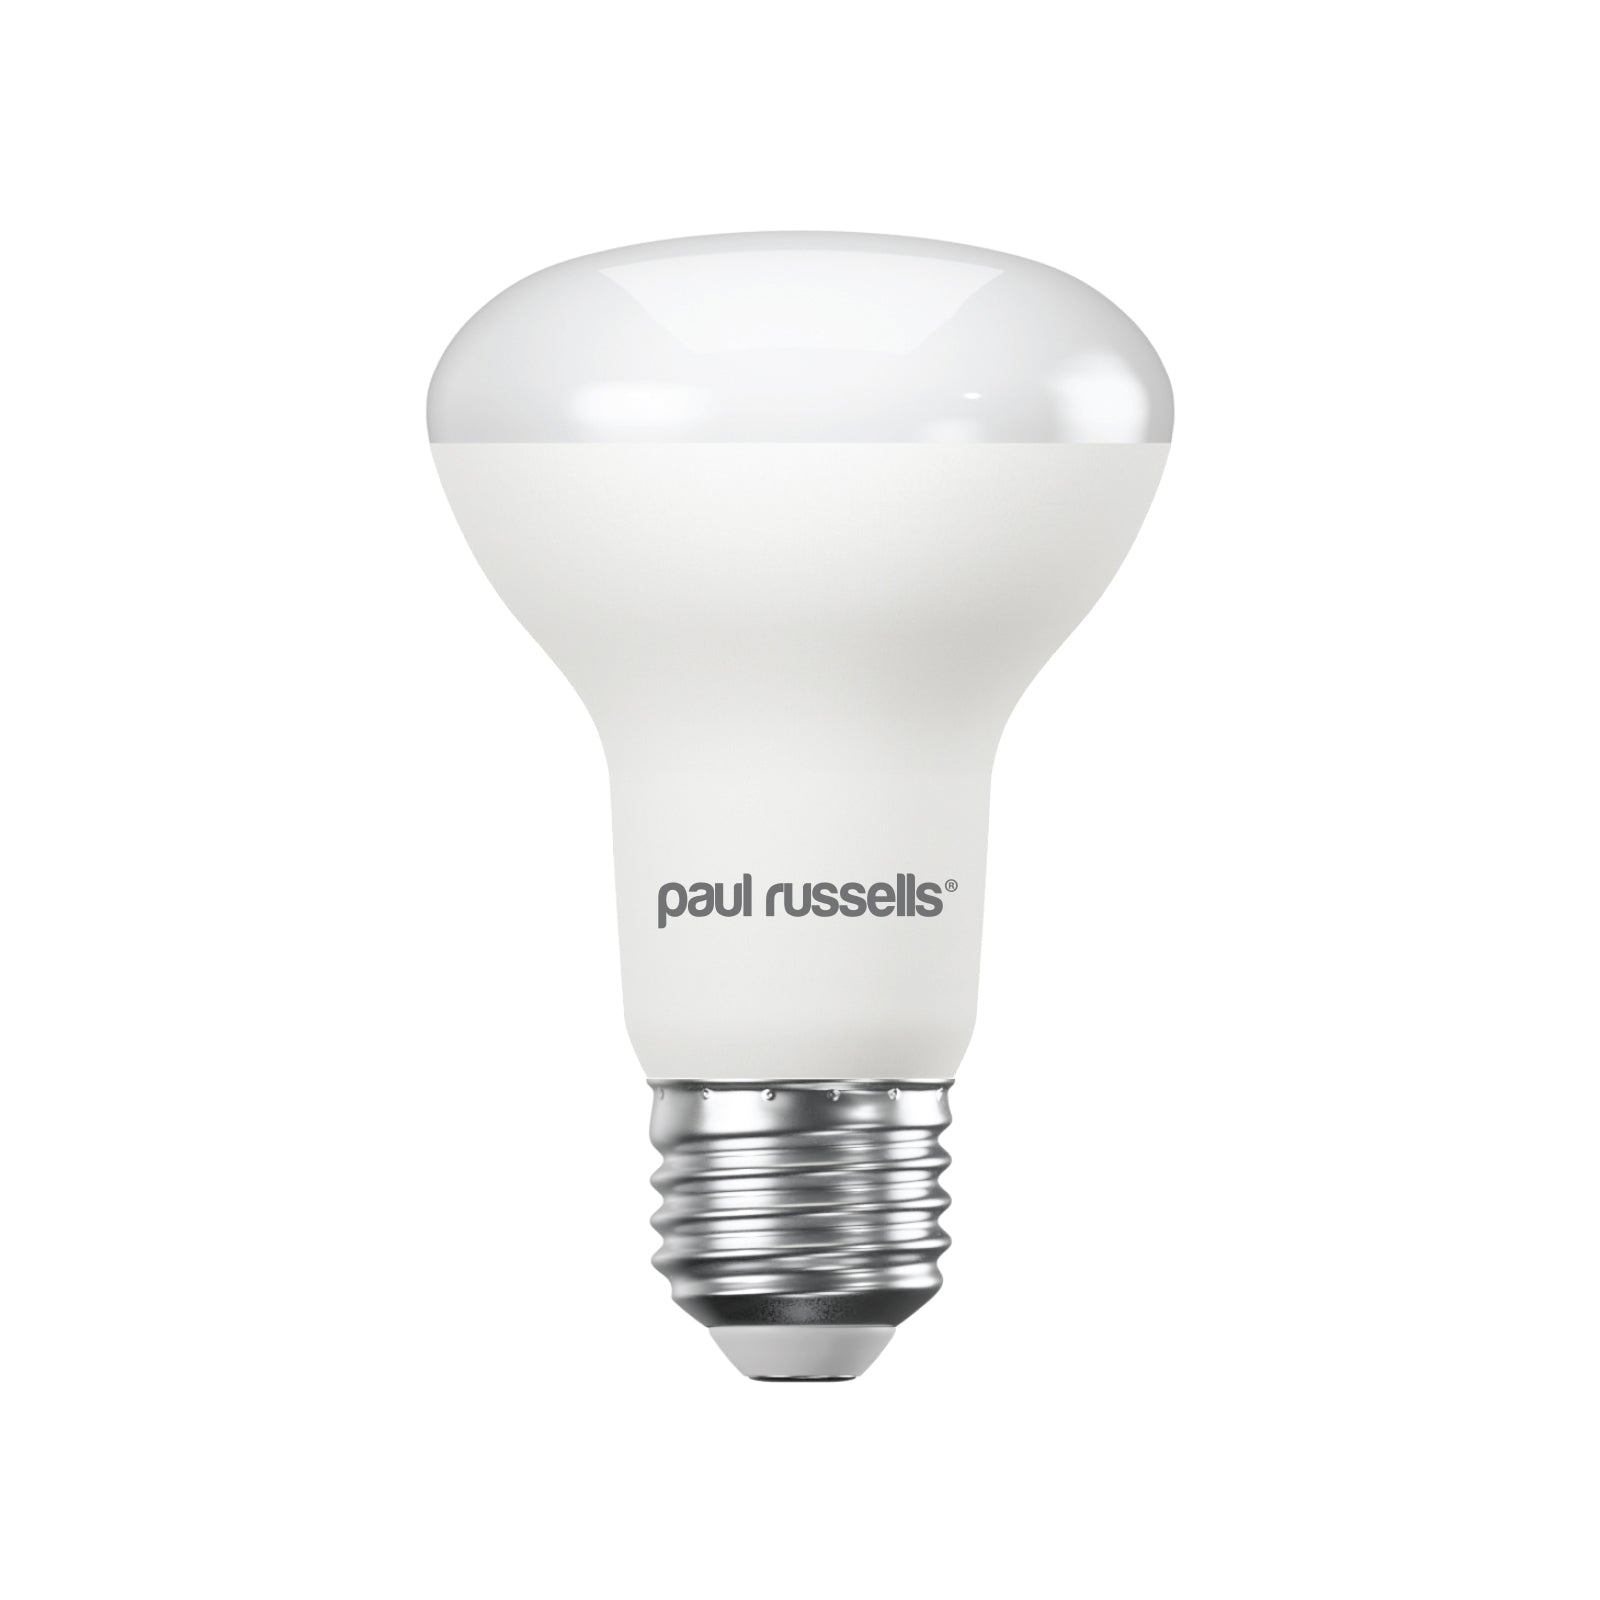 LED R63 8.5W (60w), ES/E27, 806 Lumens, Cool White(4000K), 240V